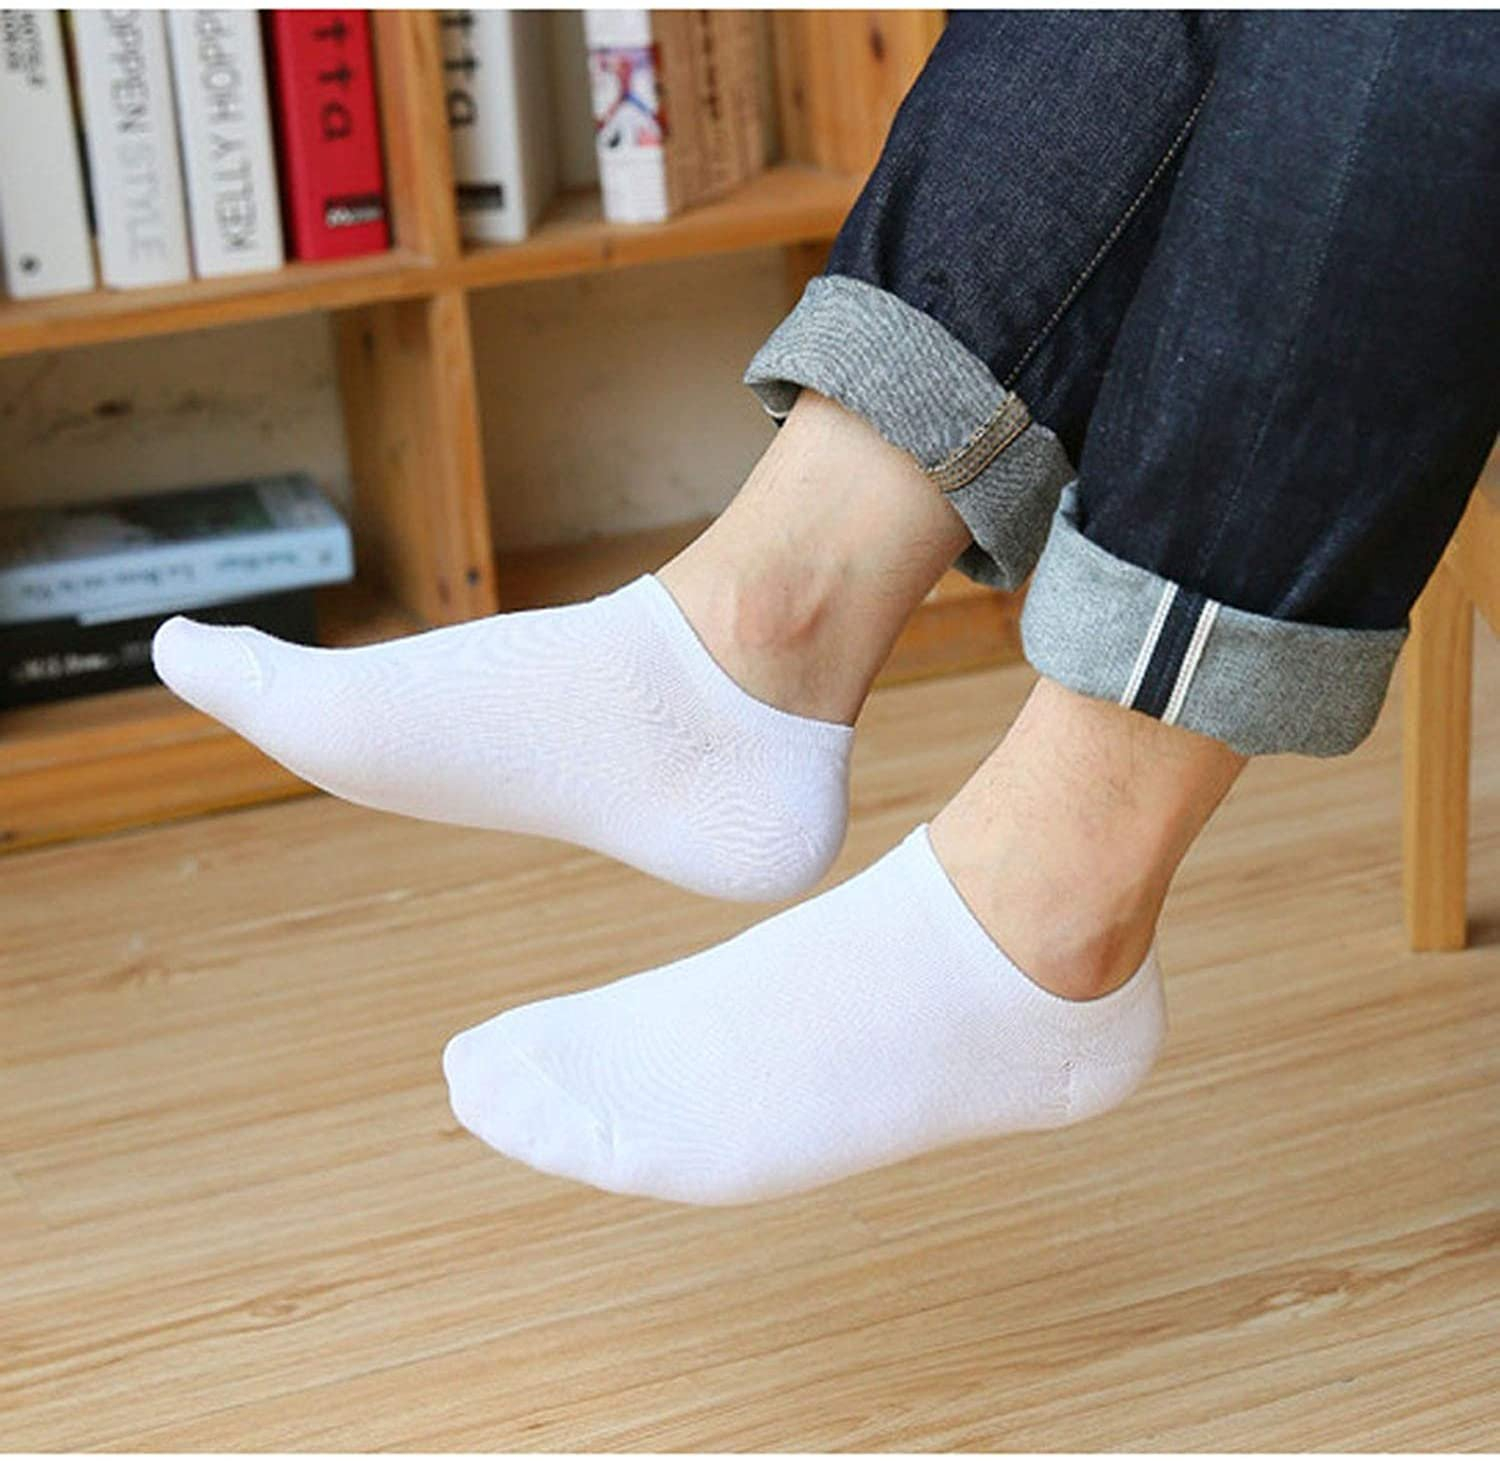 Белые короткие носки